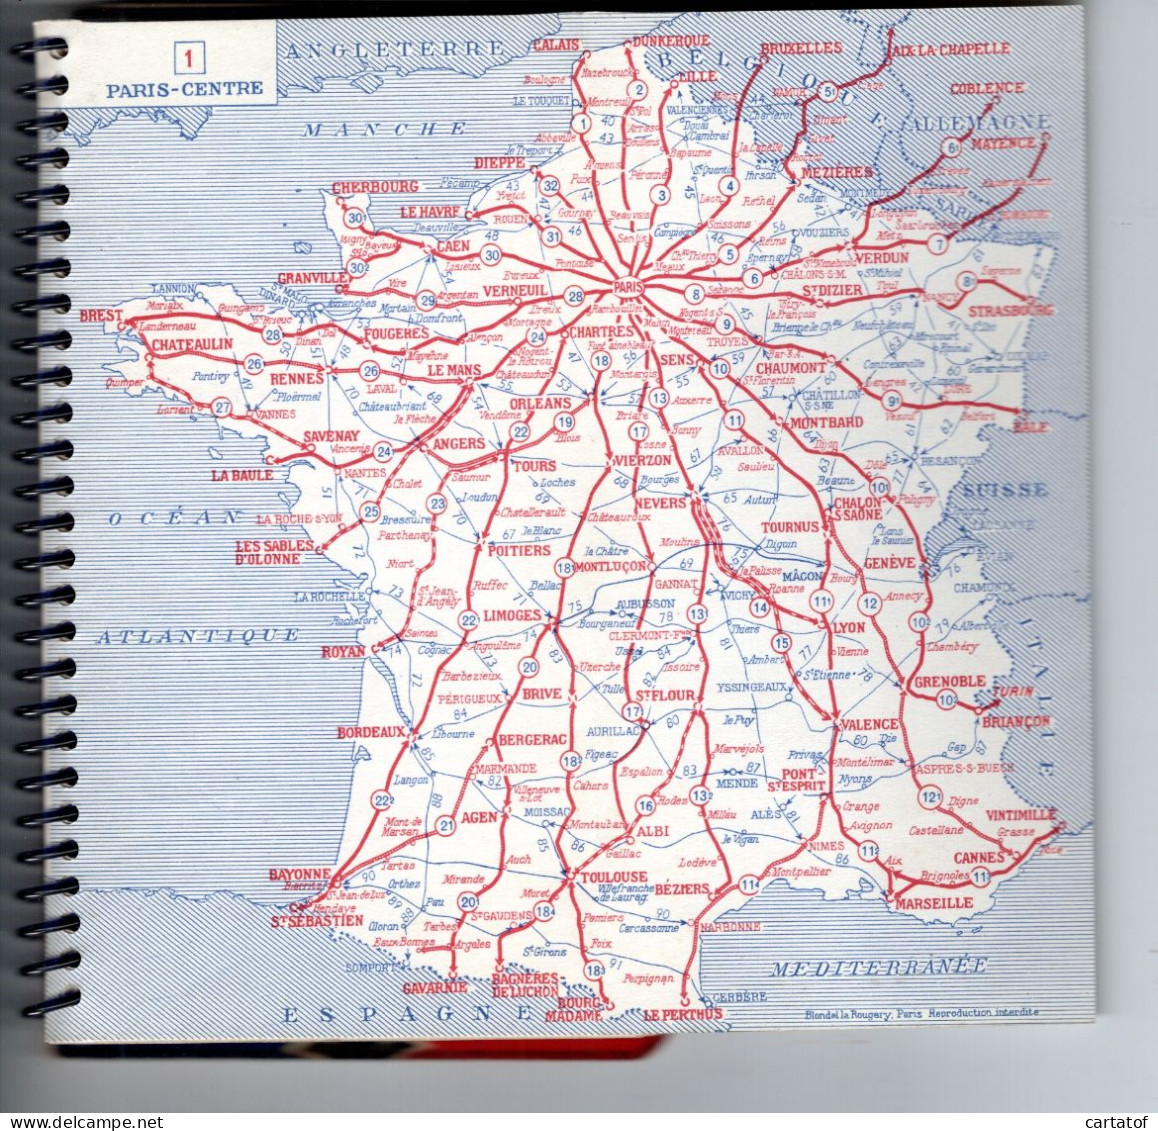 LES GRANDES ROUTES DE France . Guide Offert Par La B.N.C.I. - Maps/Atlas